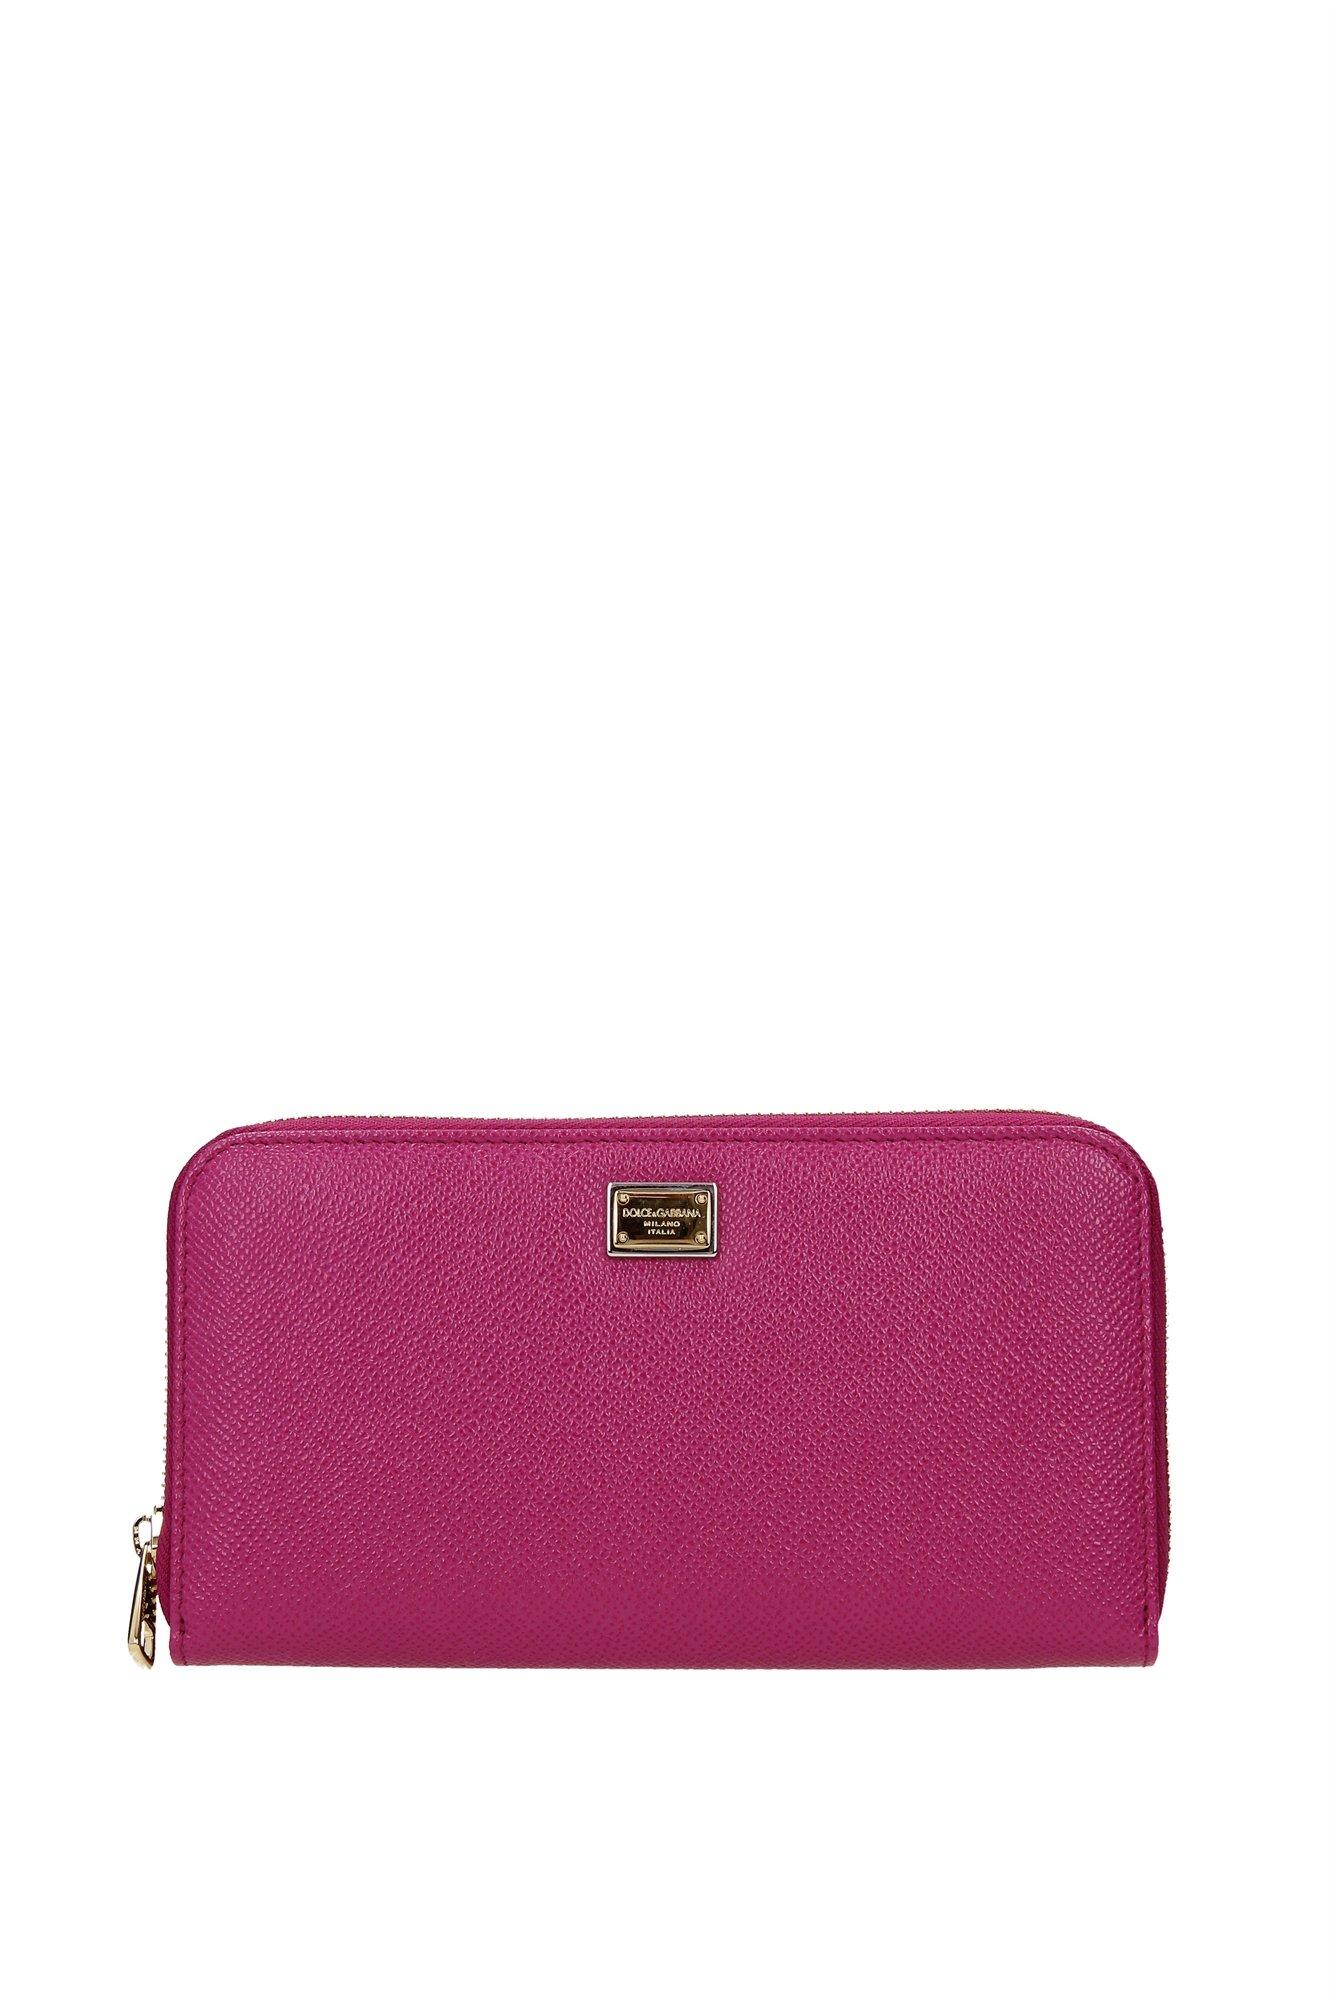 Dolce & Gabbana Leather Wallets Women Fuchsia in Purple - Lyst